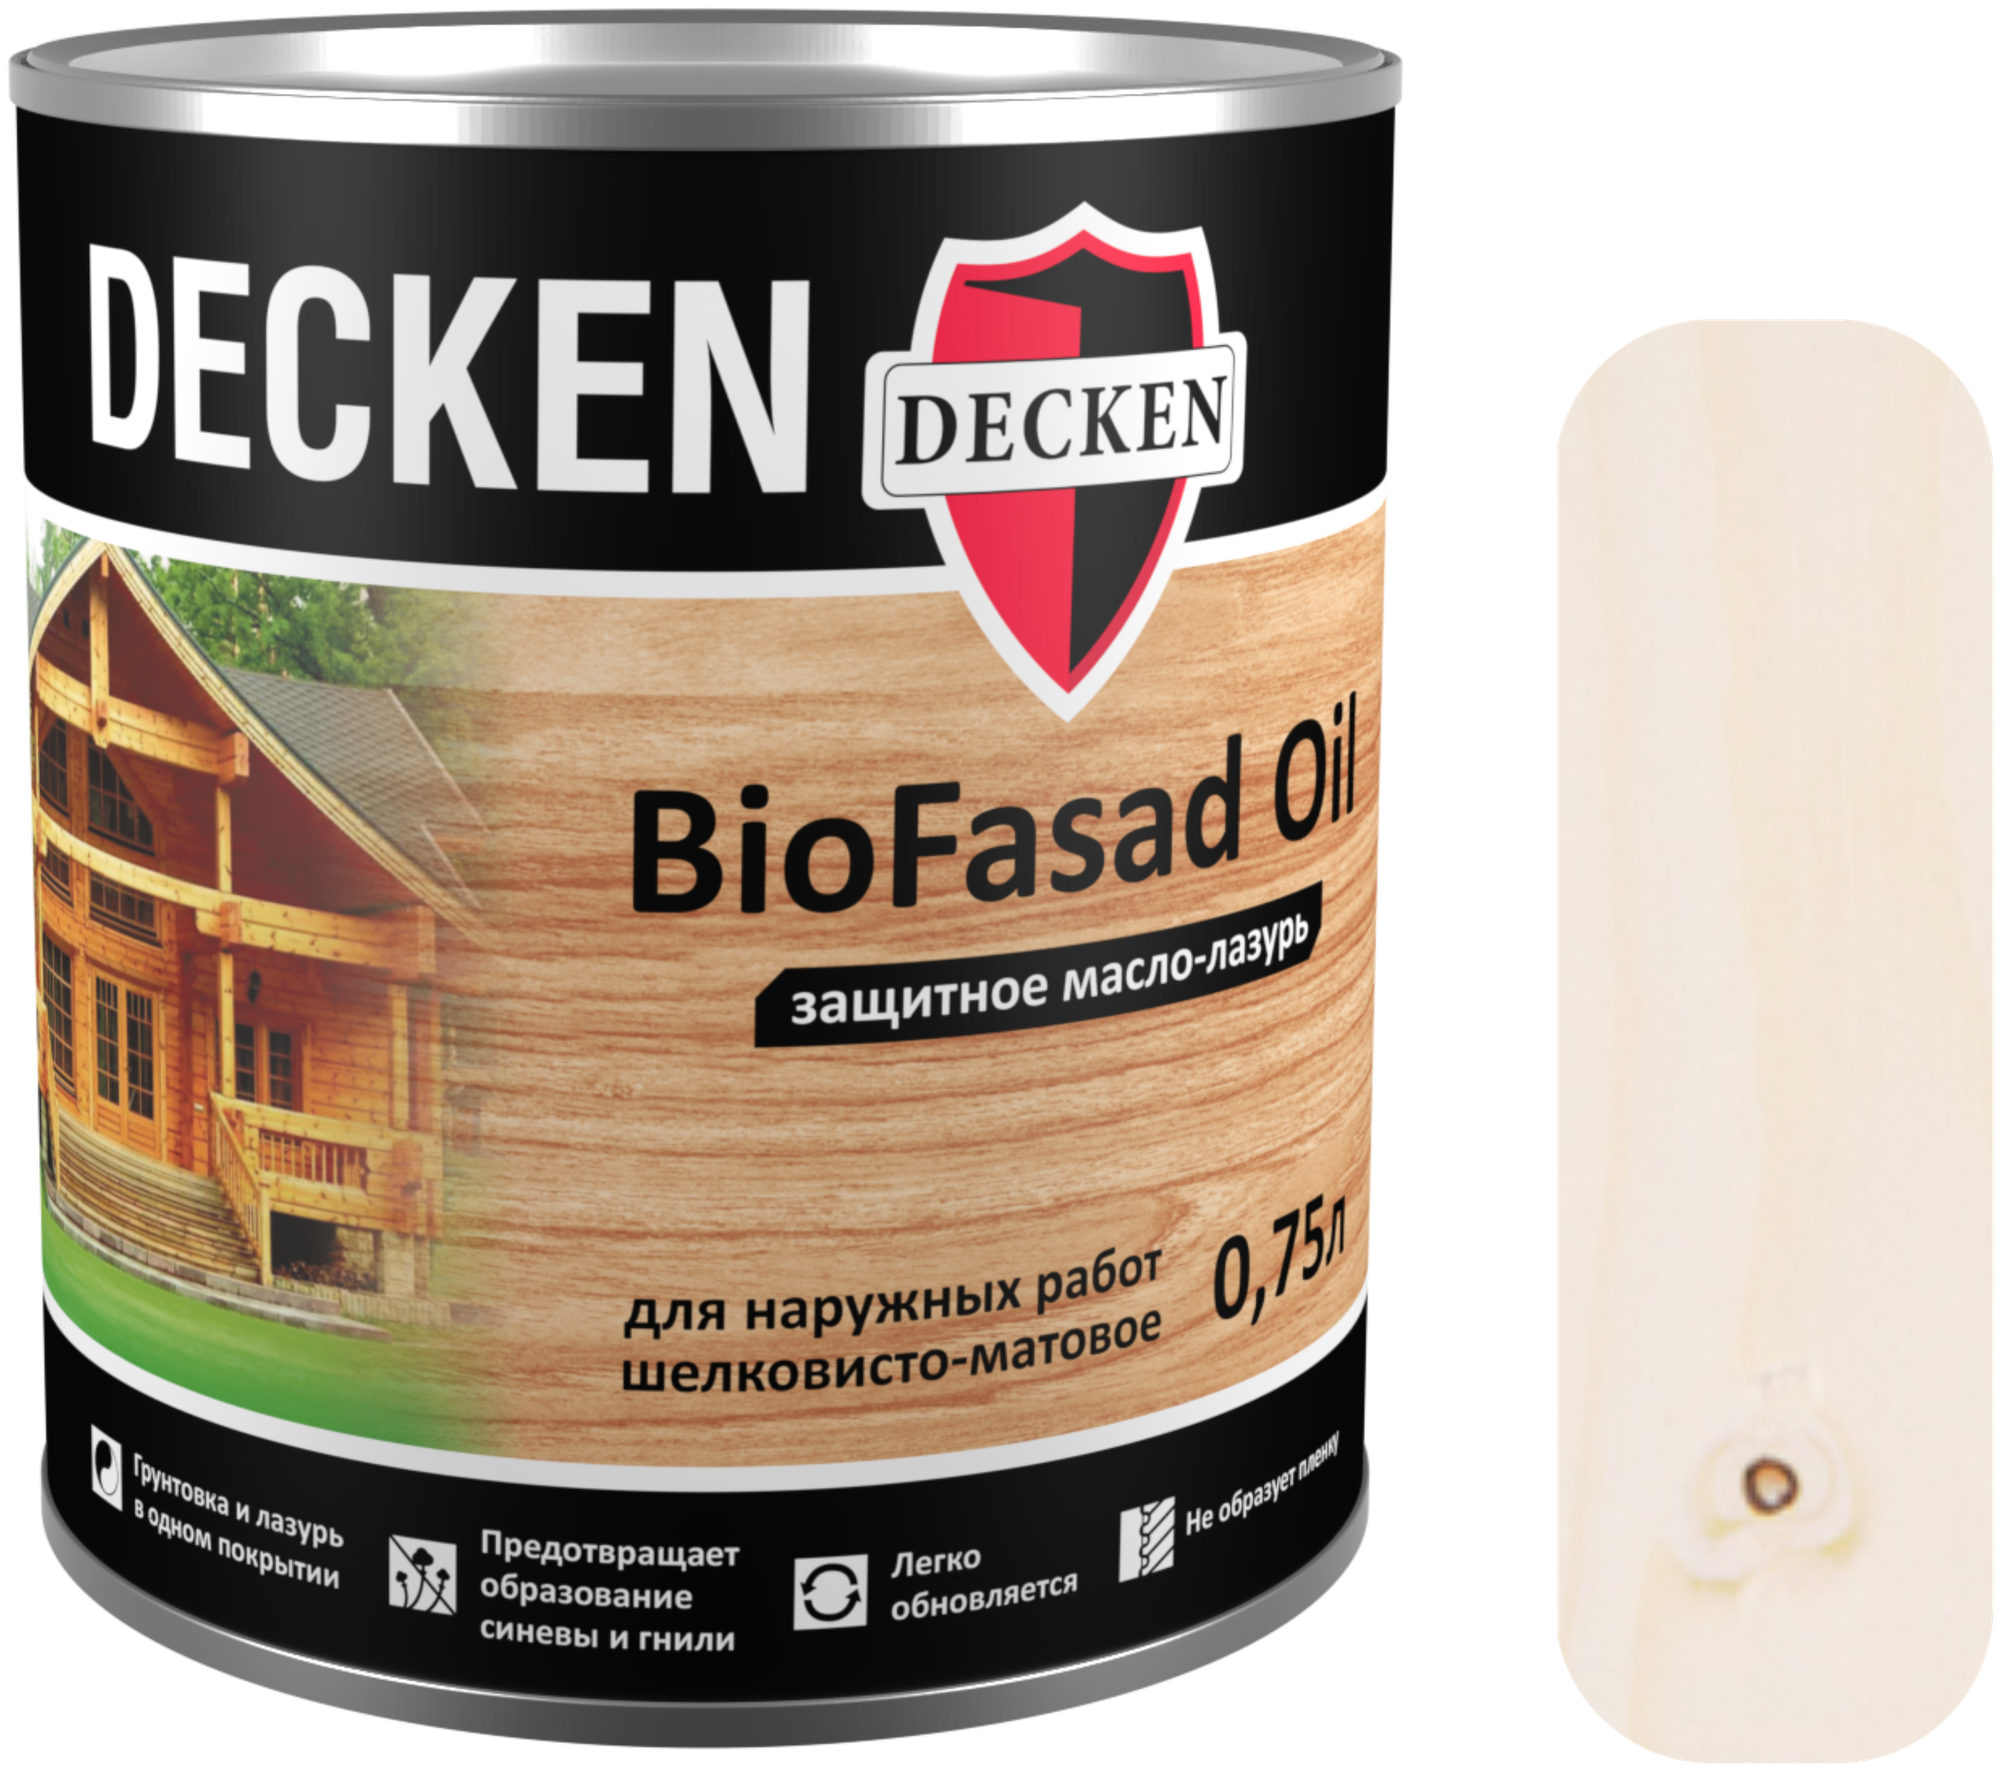 Защитное масло-лазурь Decken BioFasad Oil белое 0,75 л